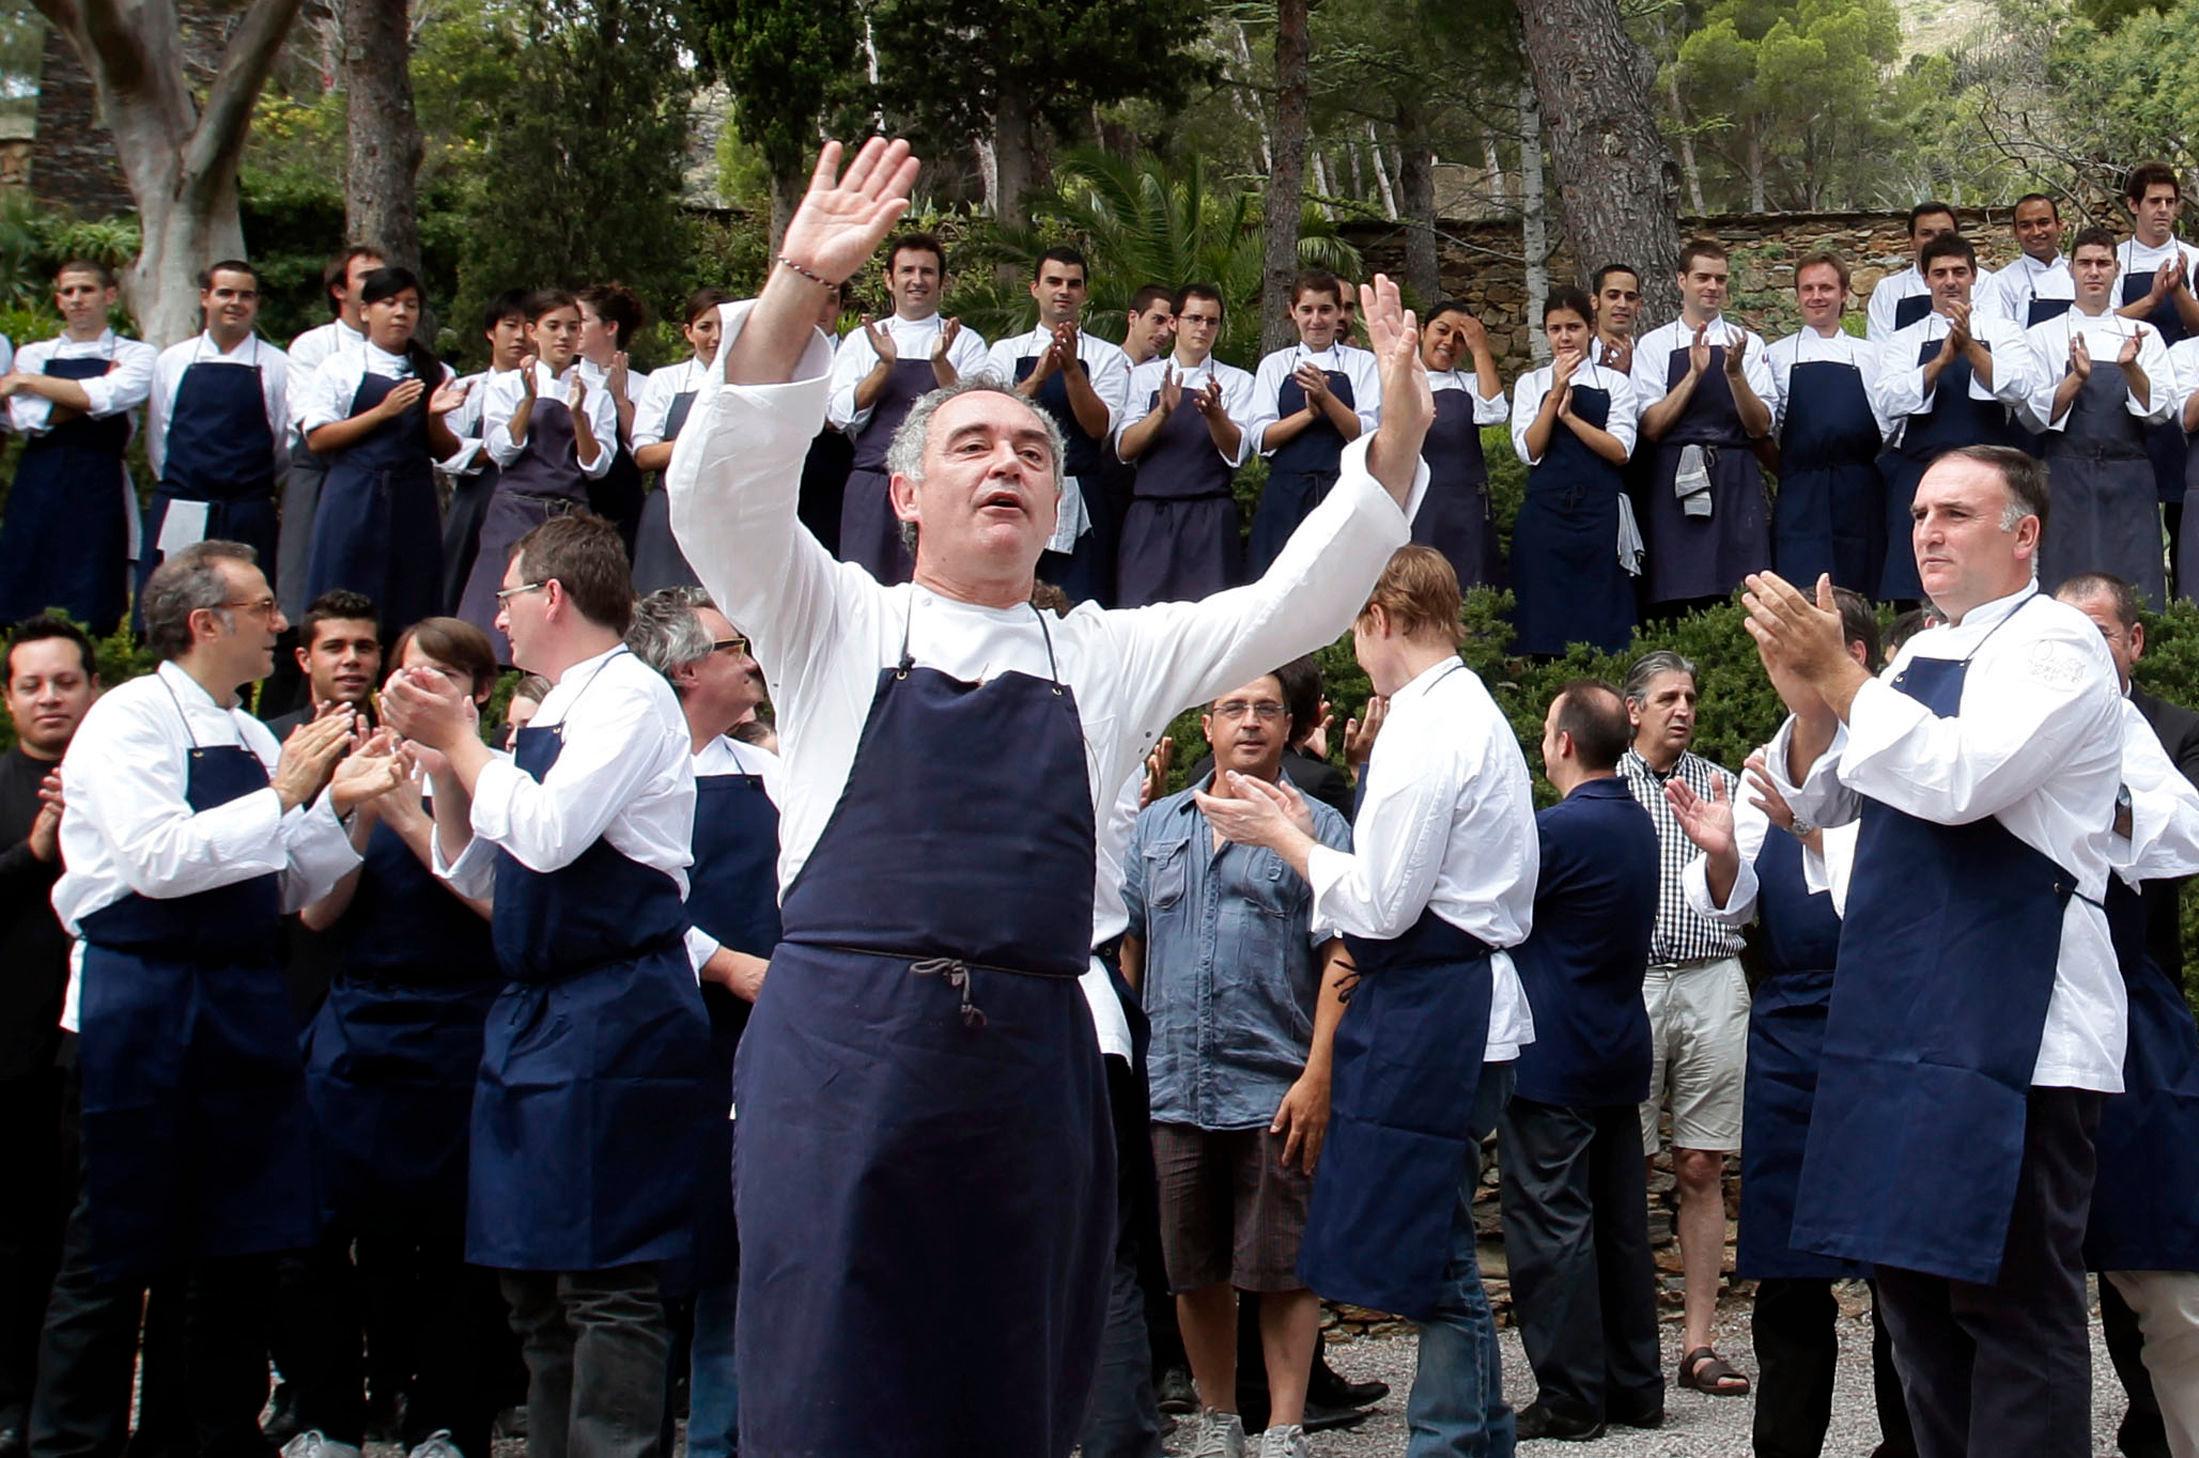 GODE HJELPERE: Ferran Adriá, kokk og medeier i El Bulli, sammen med kokkelaget sitt i Cala Montjoi, kort tid før han stengte dørene for matservering på restauranten i 2011. El Bulli åpnet igjen som et kreativt senter for kokkekunst i 2014. Foto: Albert Gea/Reuters/Scanpix